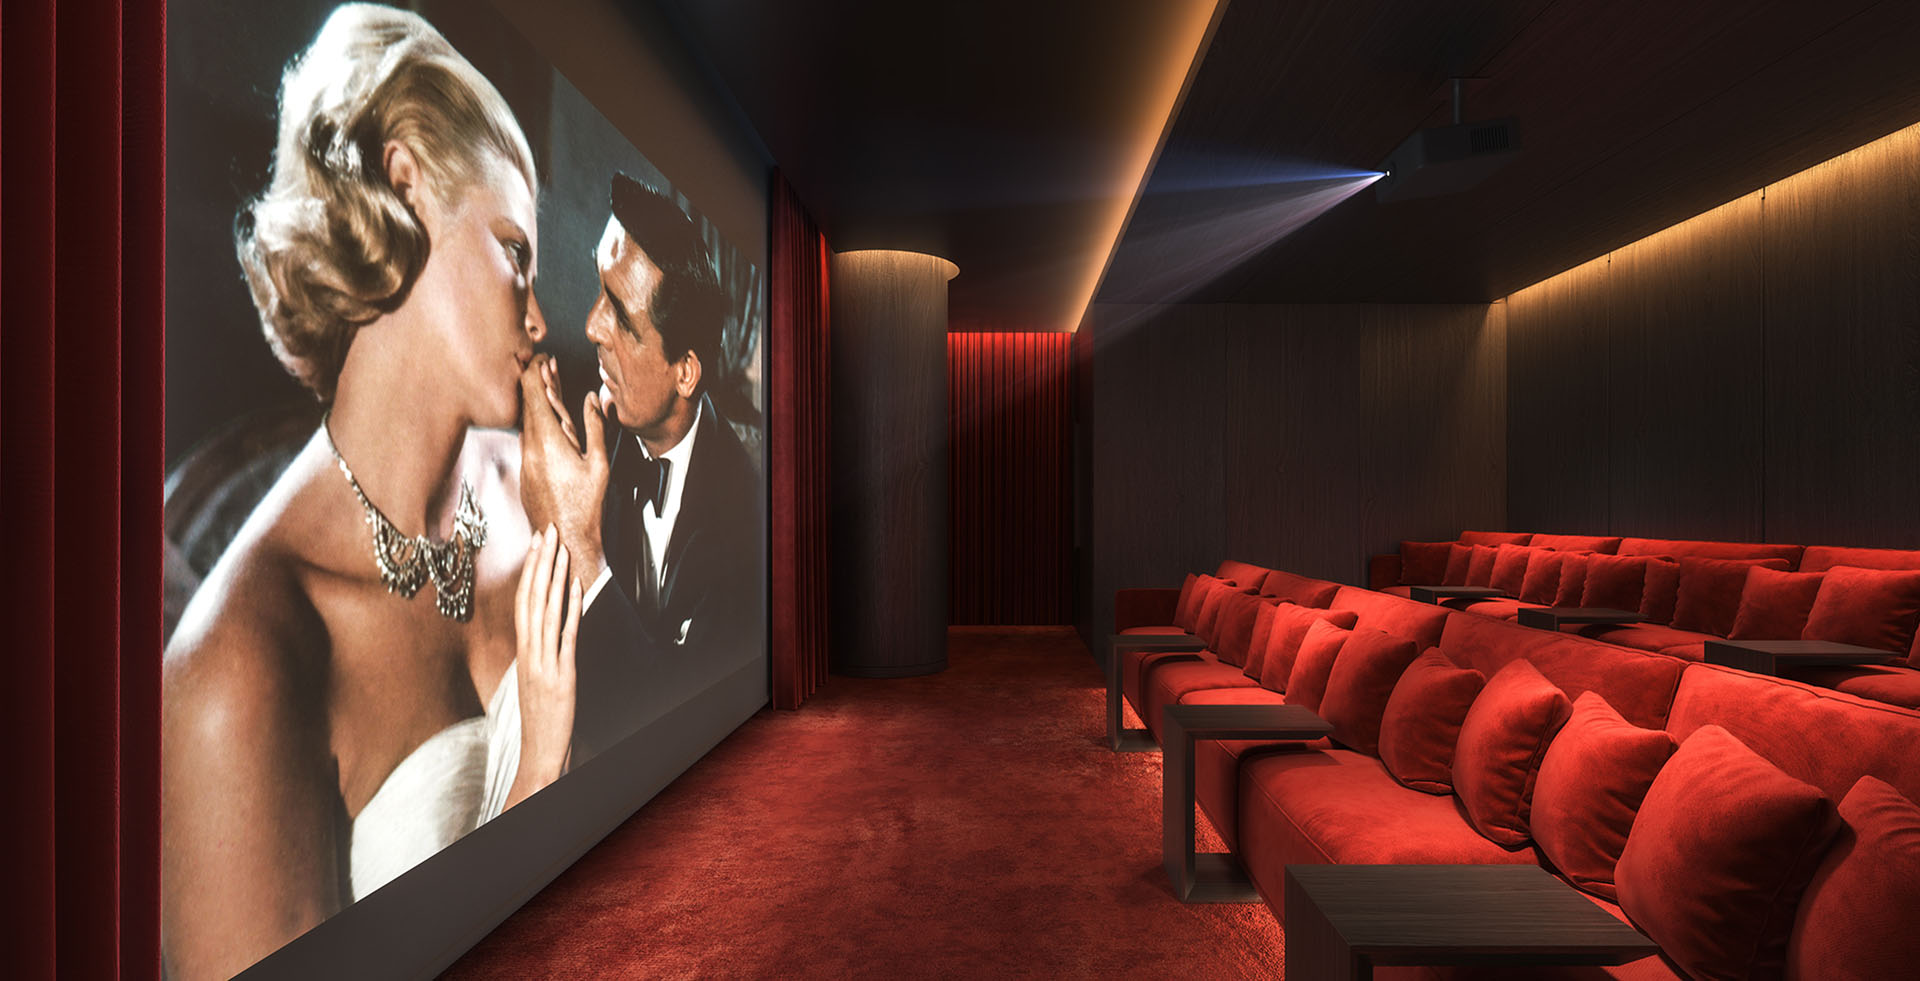 Cinema Lounge